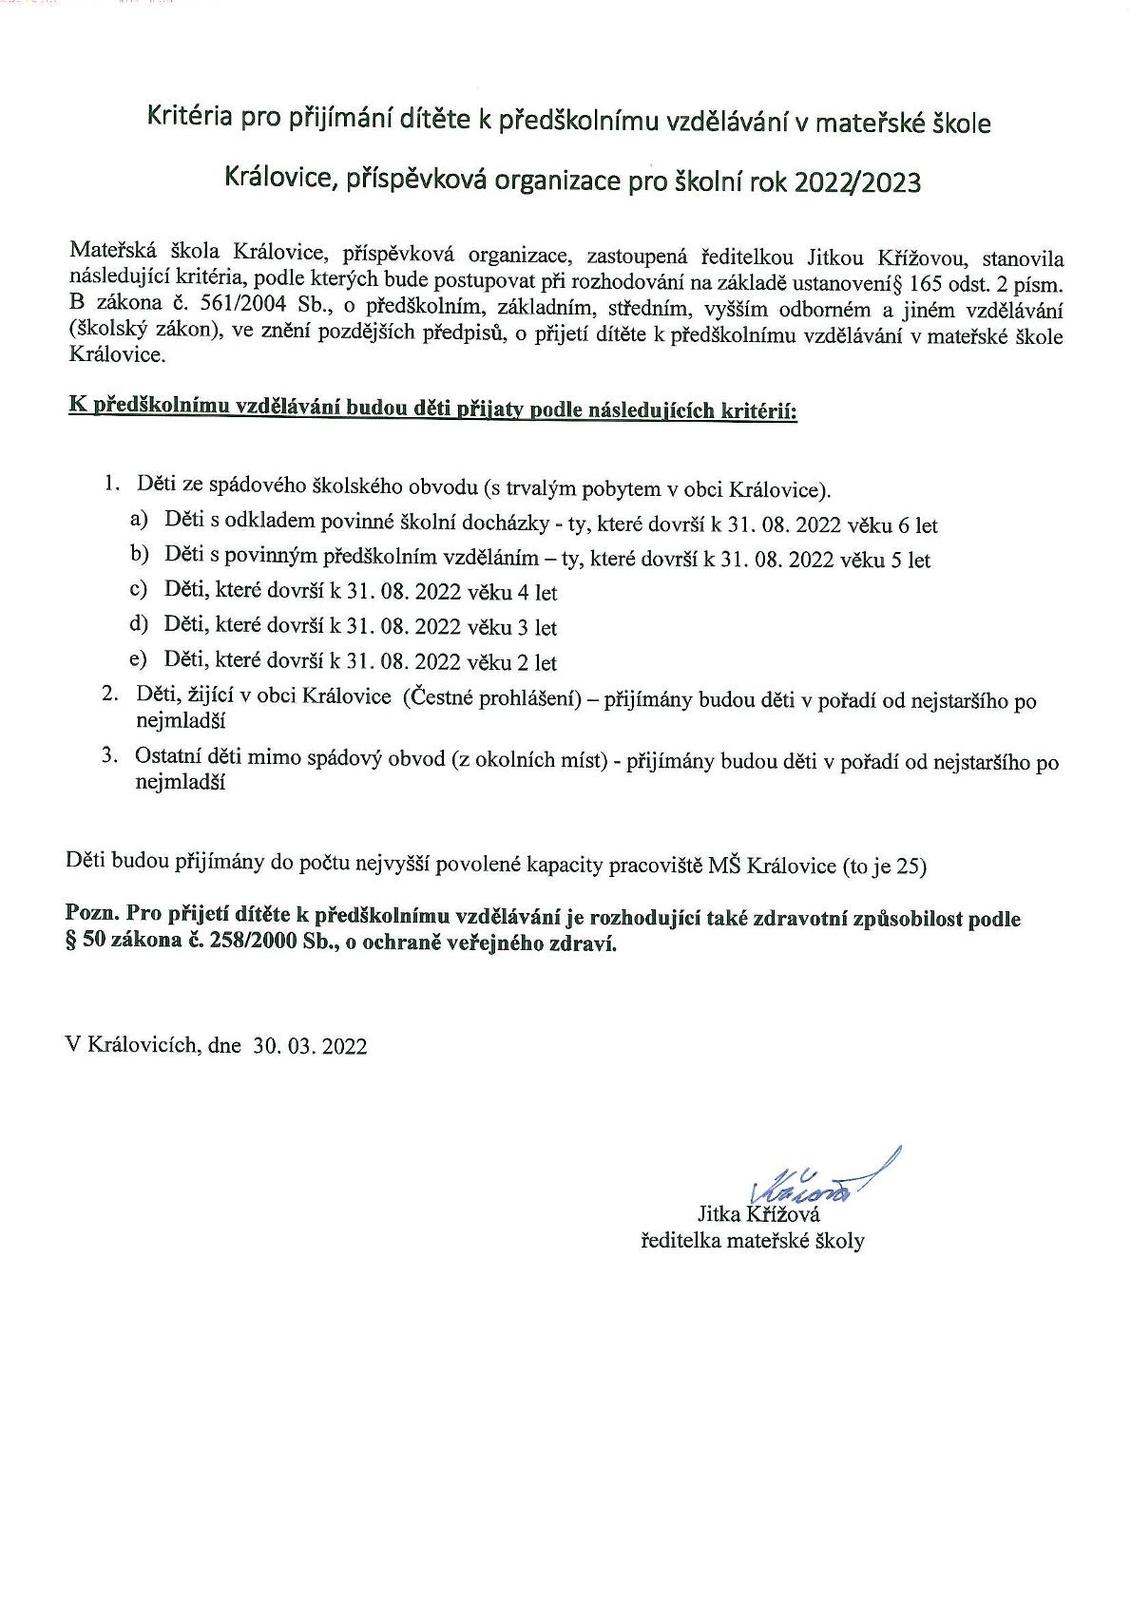 Kritéria pro přijímání dětí do MŠ Královice 2022-2023.jpg